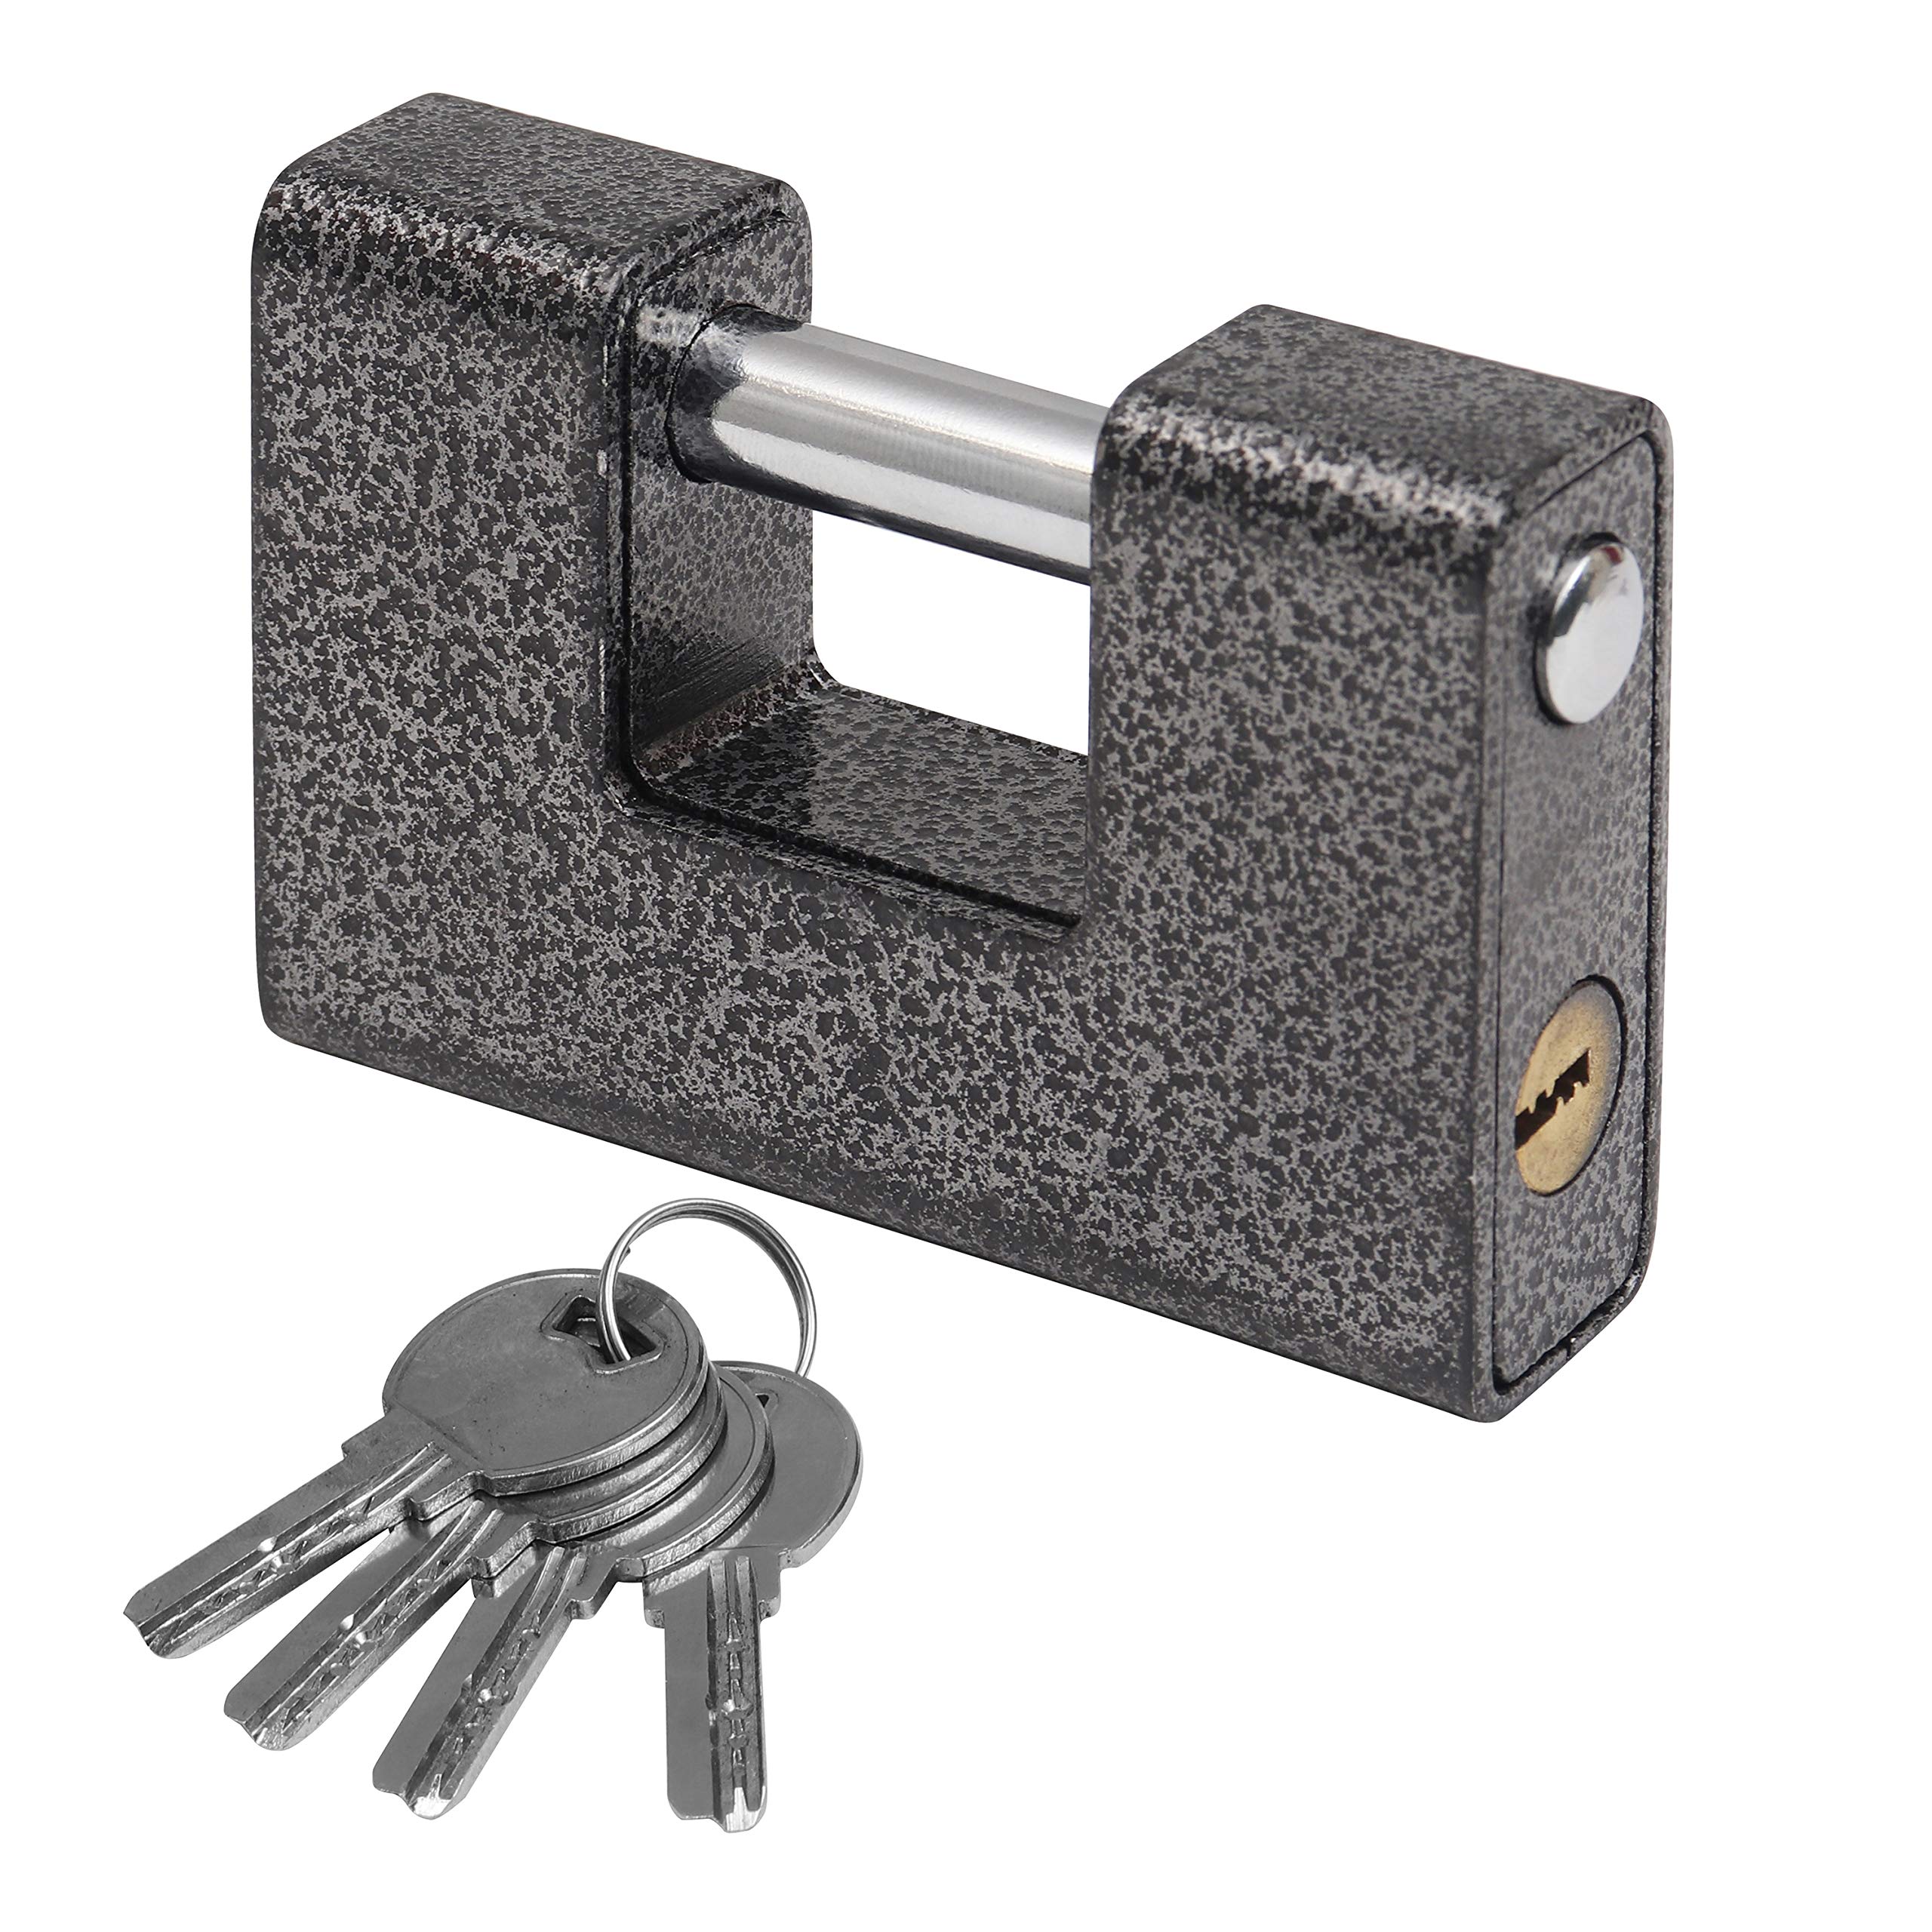 Security lock or padlock